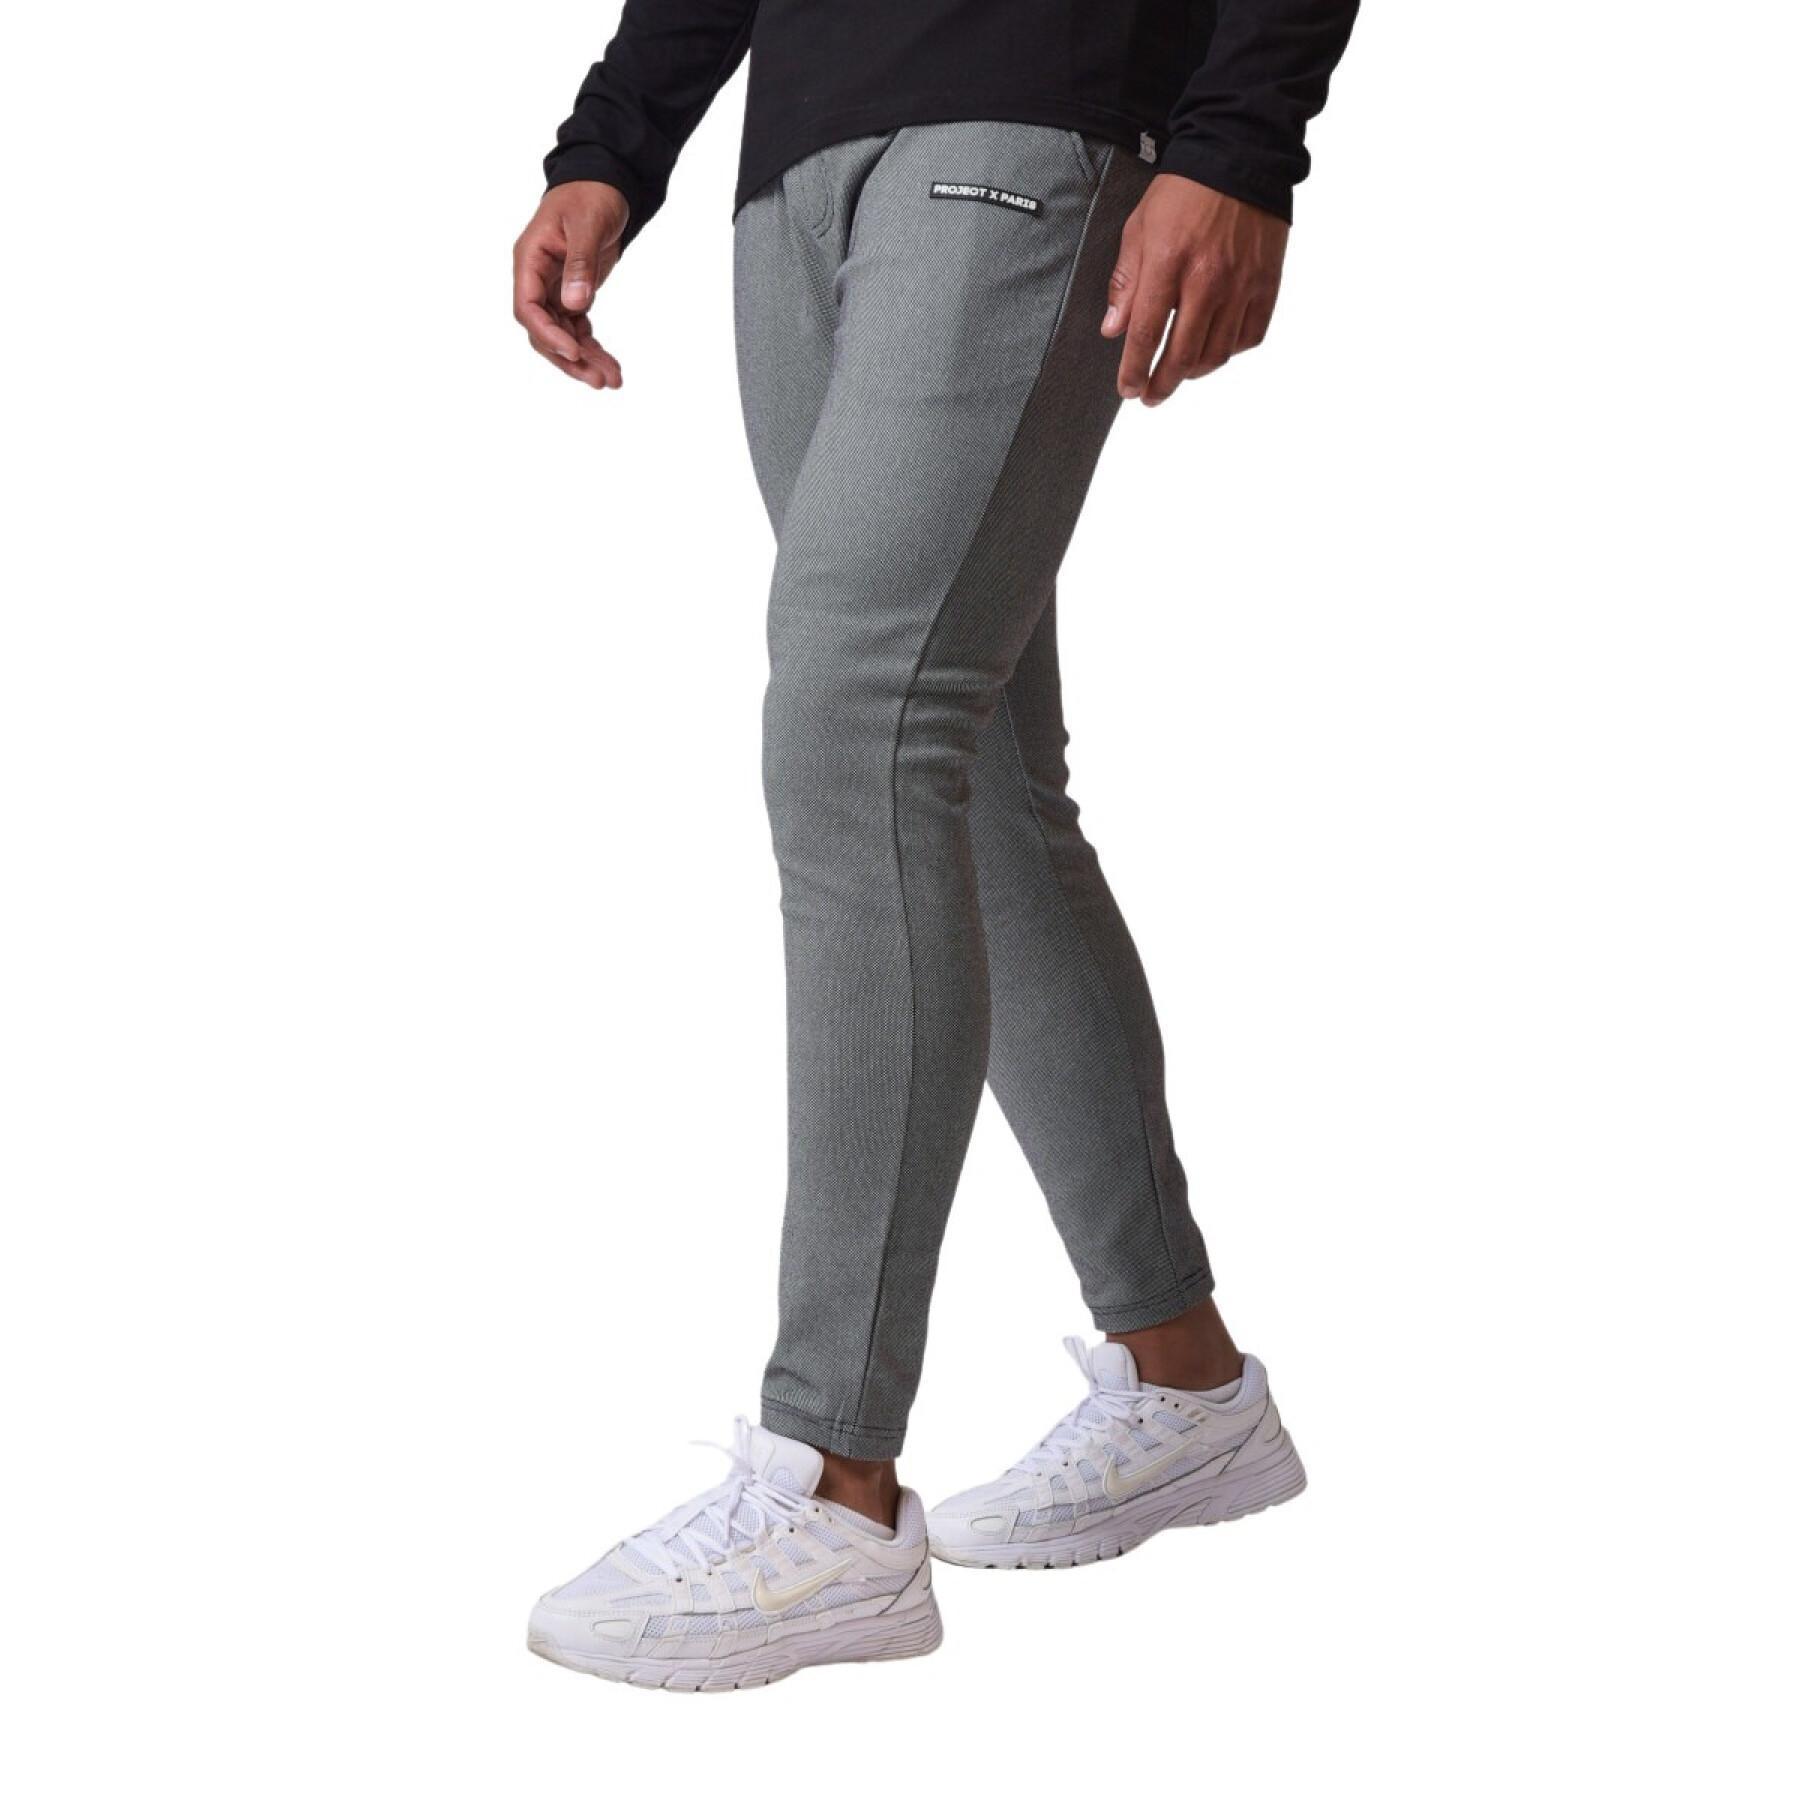 Textured slim fit pants Project X Paris